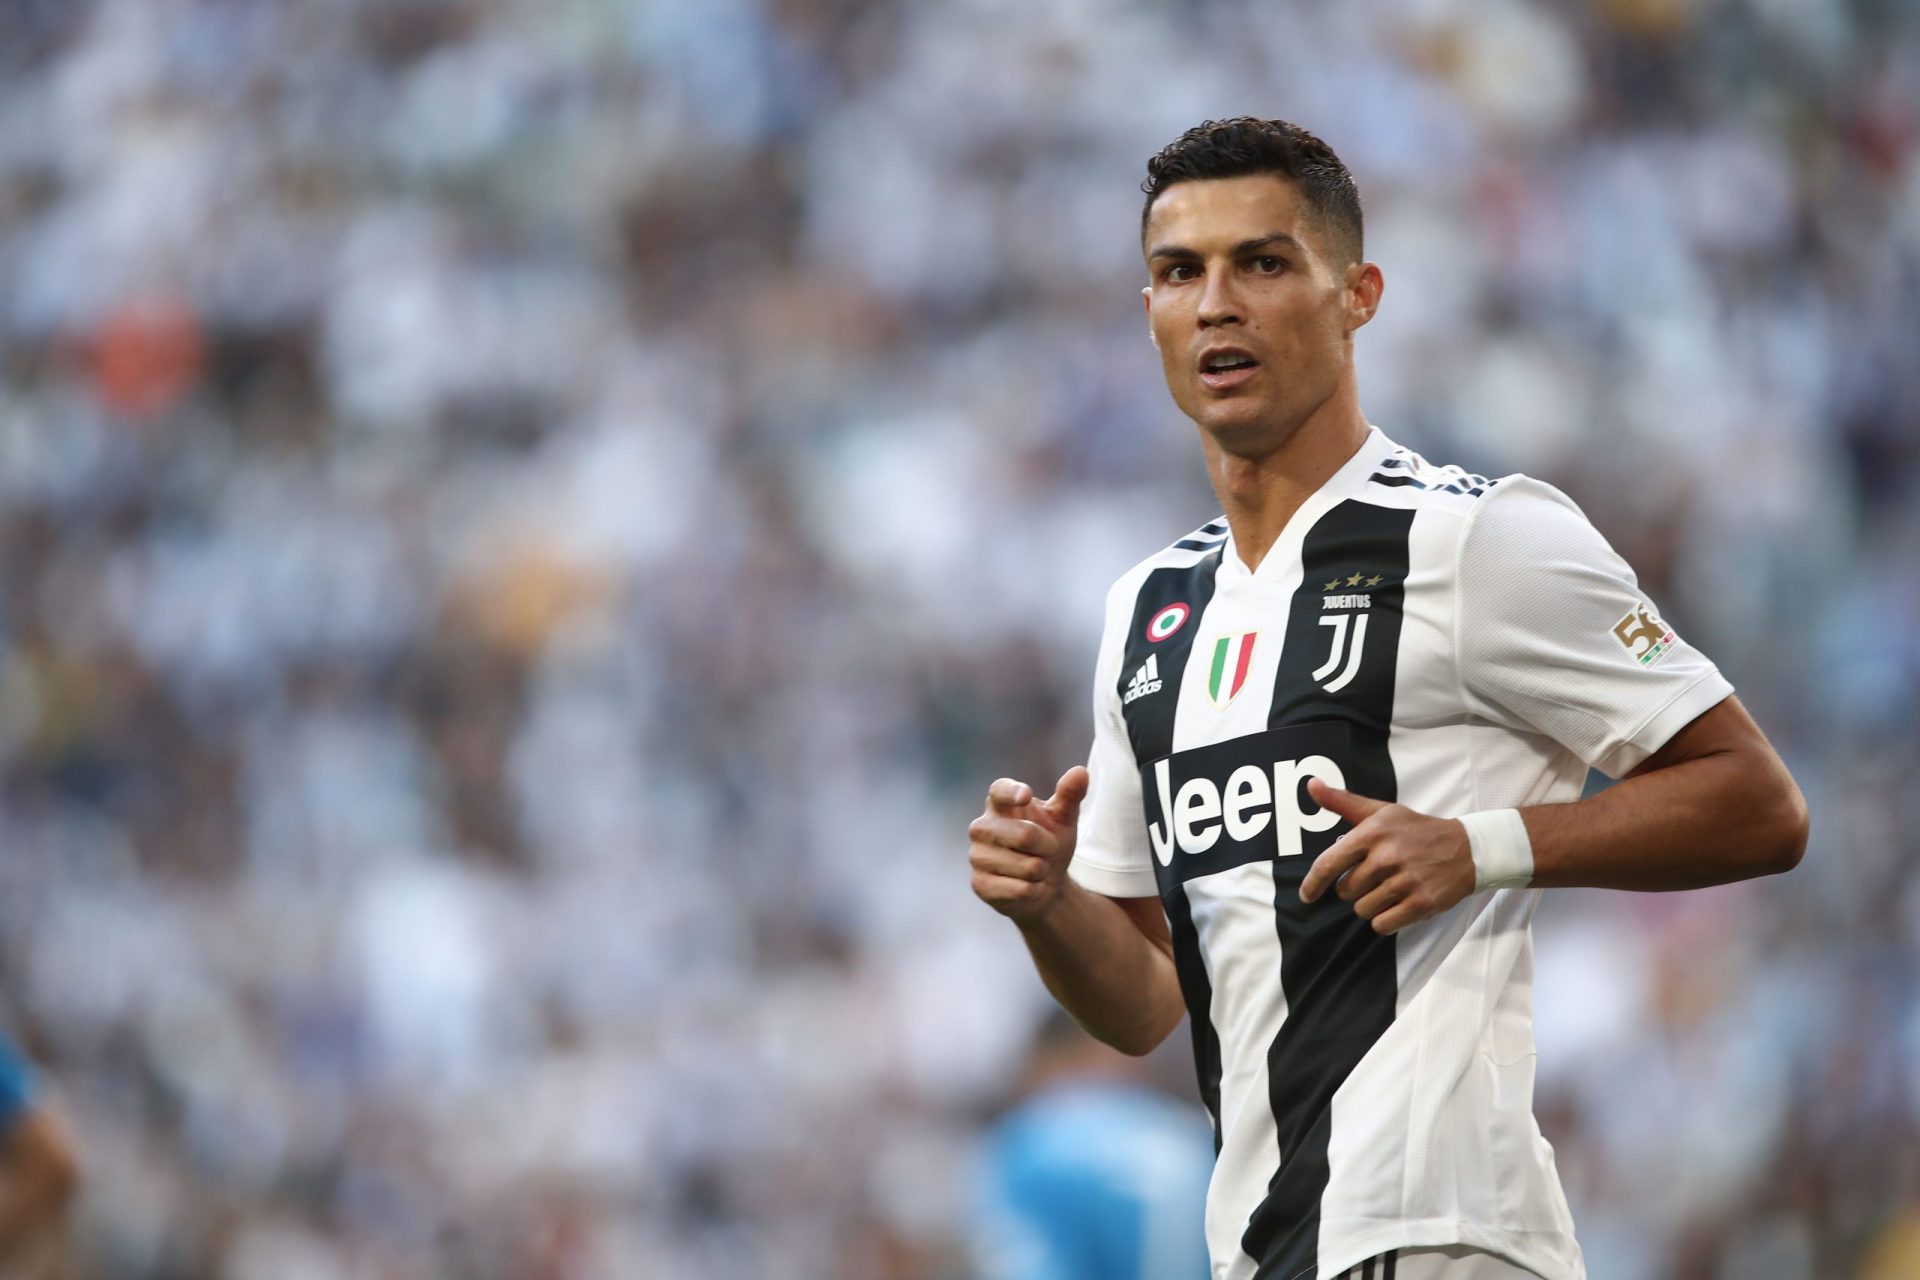 Lesões sexuais de Mayorga foram provocadas por “outra pessoa”, alega Ronaldo